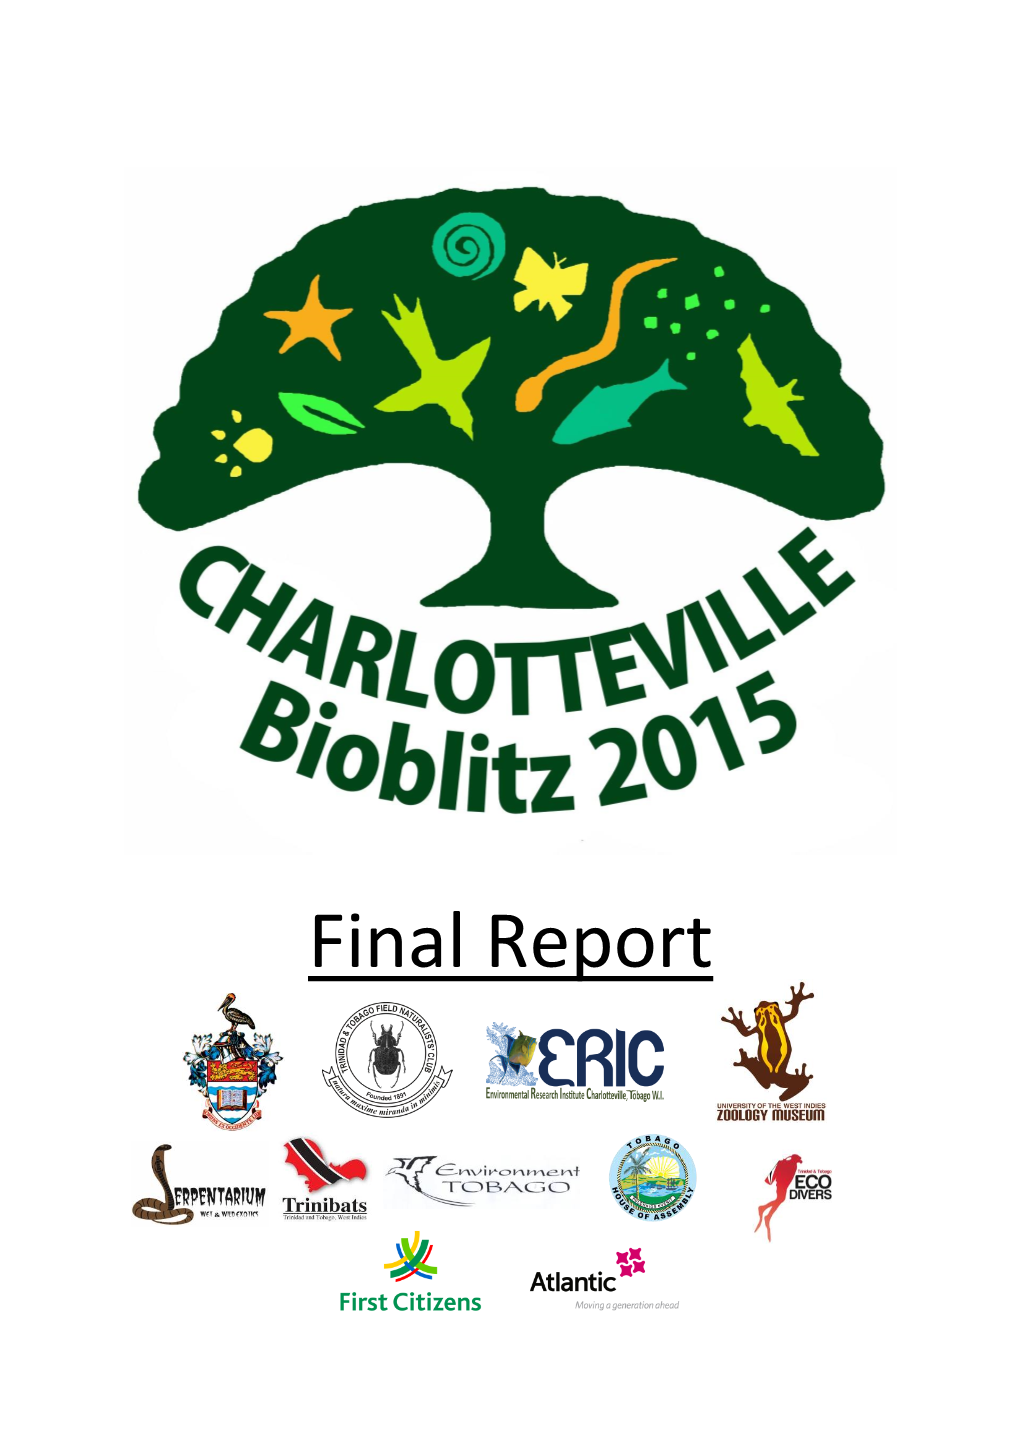 Charlotteville Bioblitz 2015 Final Report.Pdf